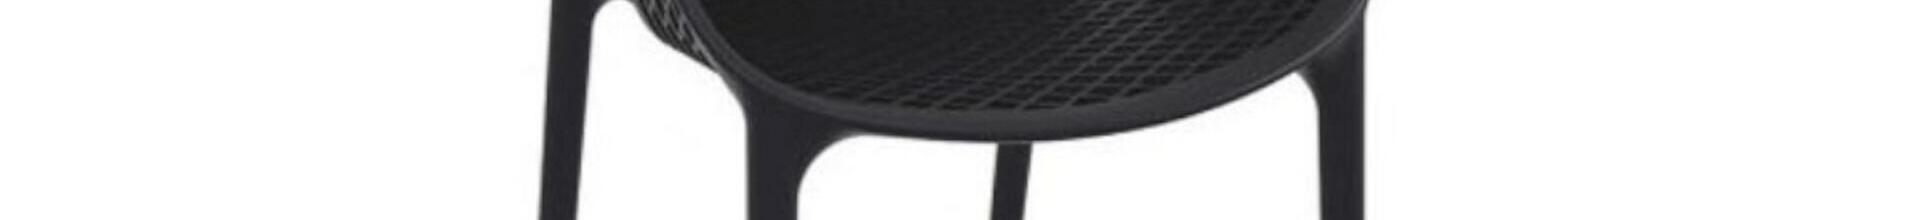 Grid Air Chair Black